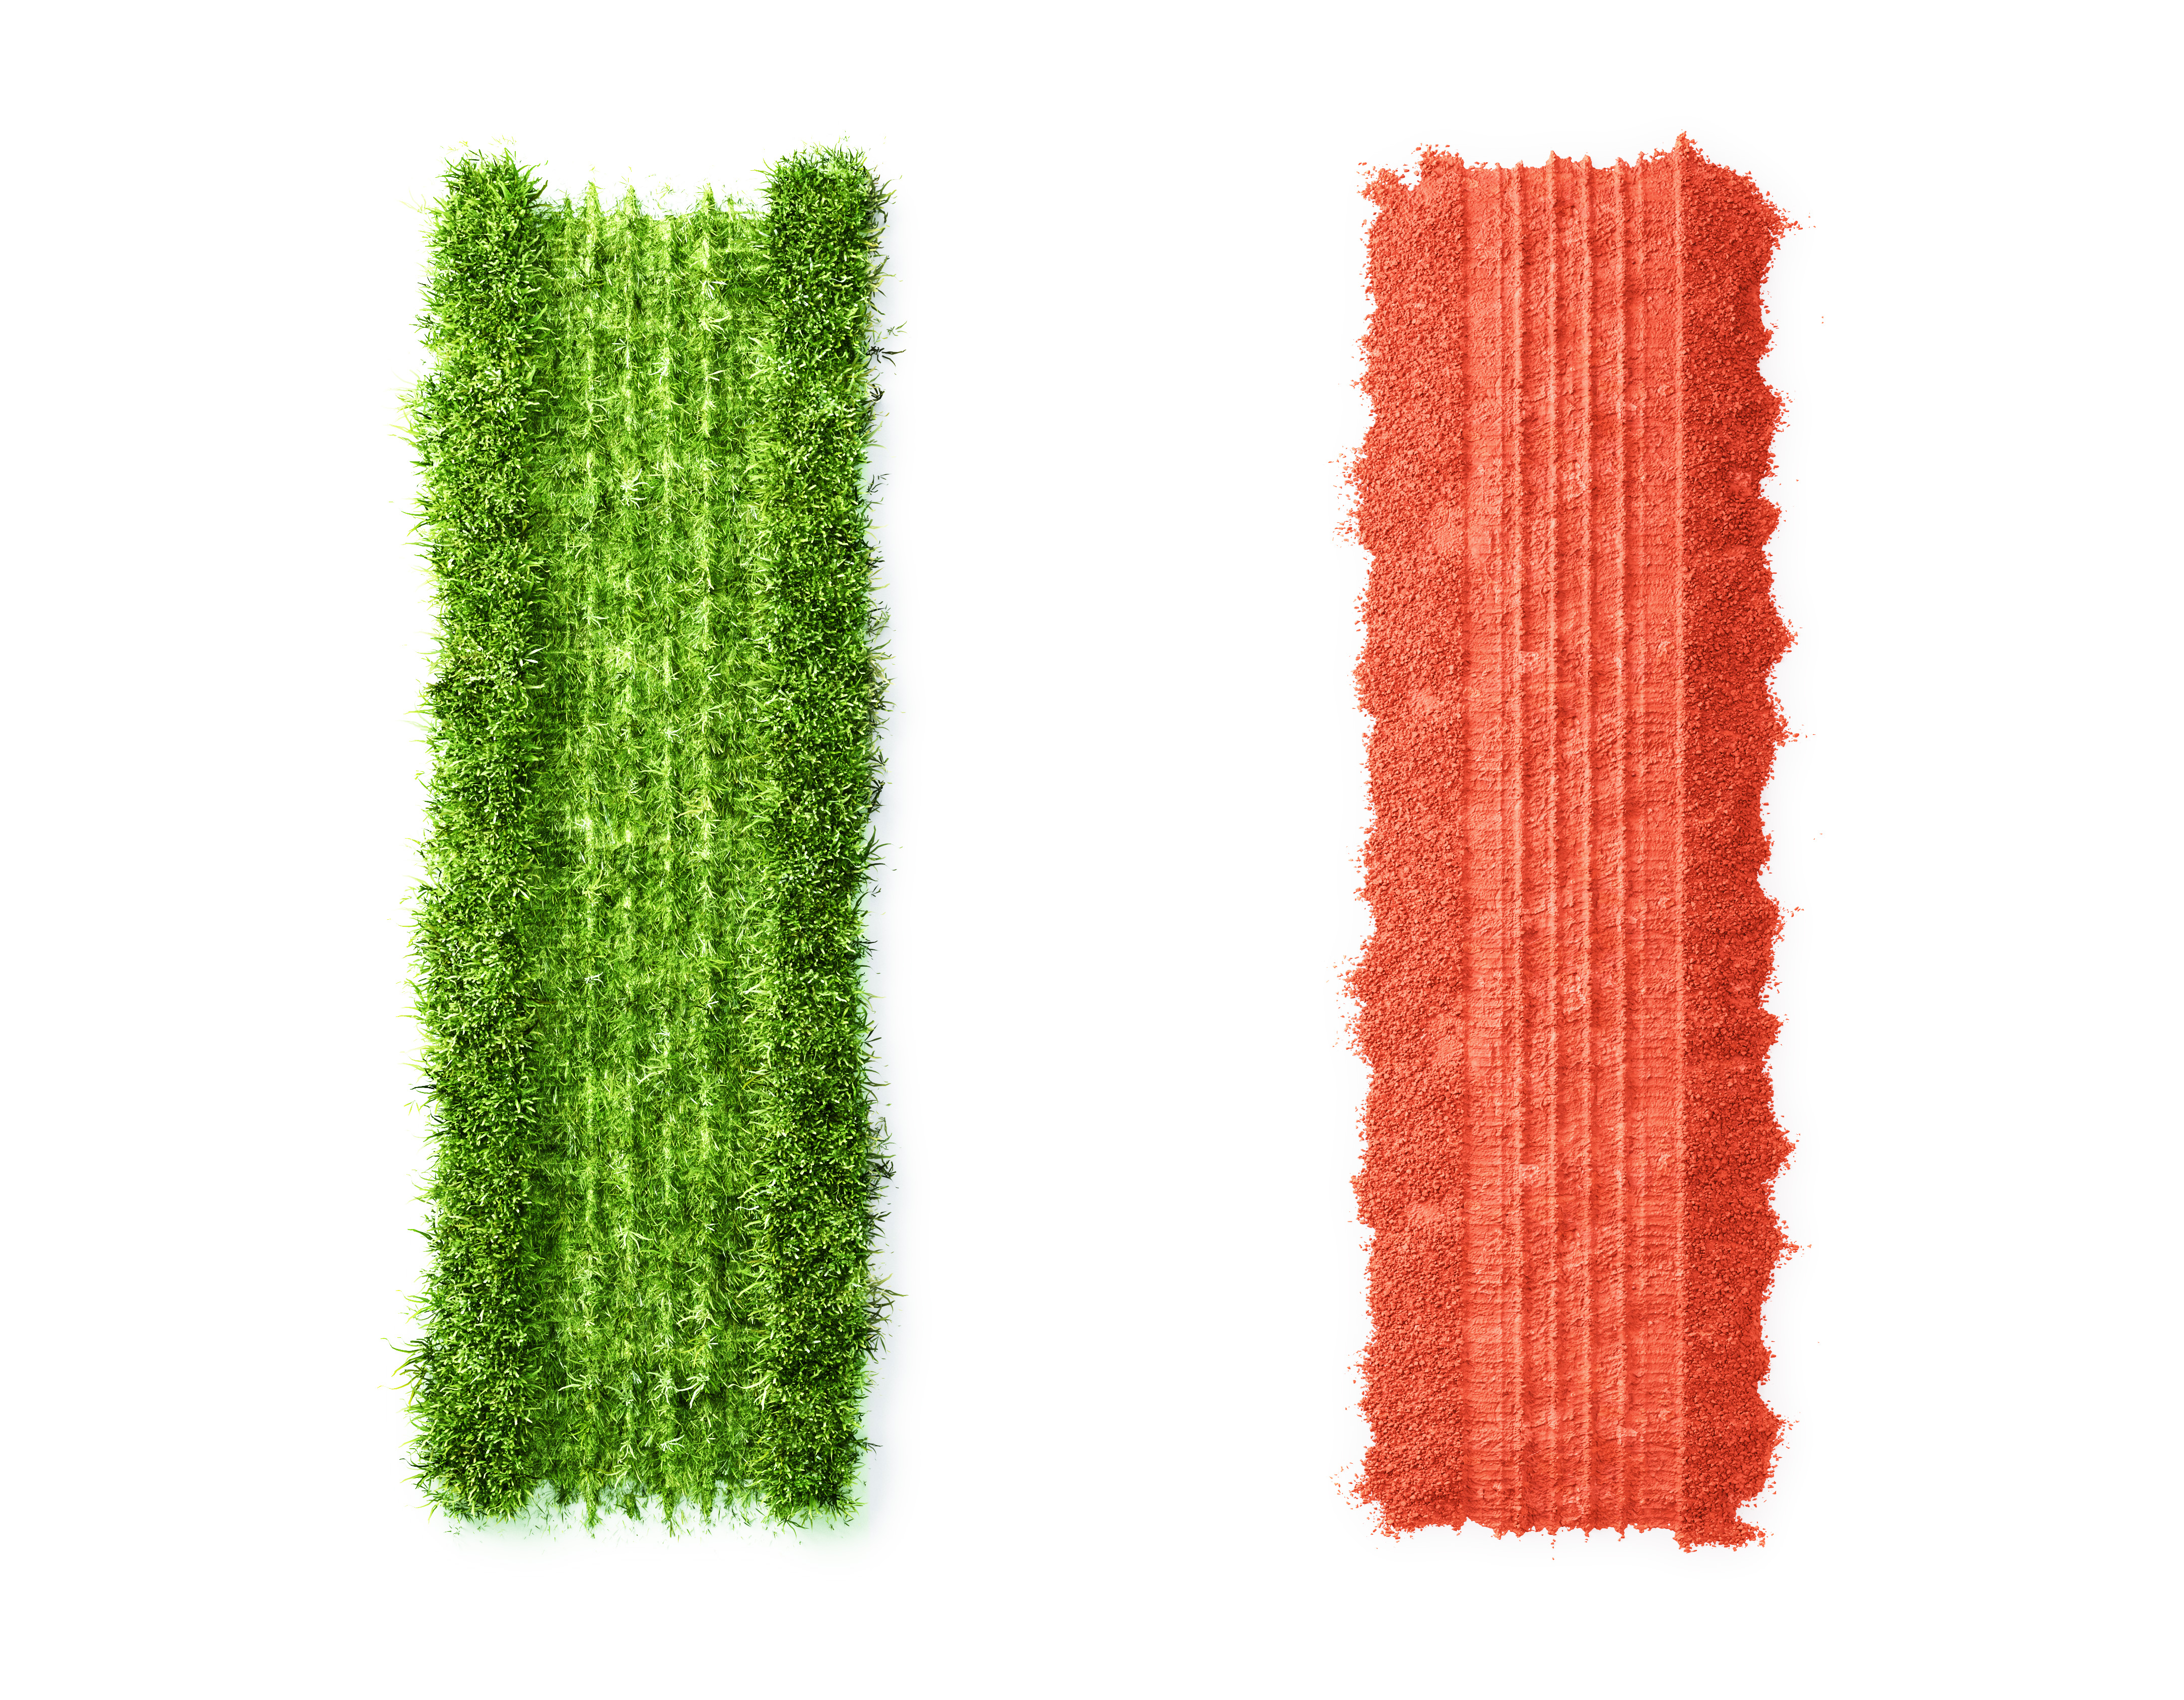 car trails in green grass and red soil from a fiat in the colors of the Italian flag, bilspår i grönt gräs och röd jord från en fiat i italienska flaggans färger